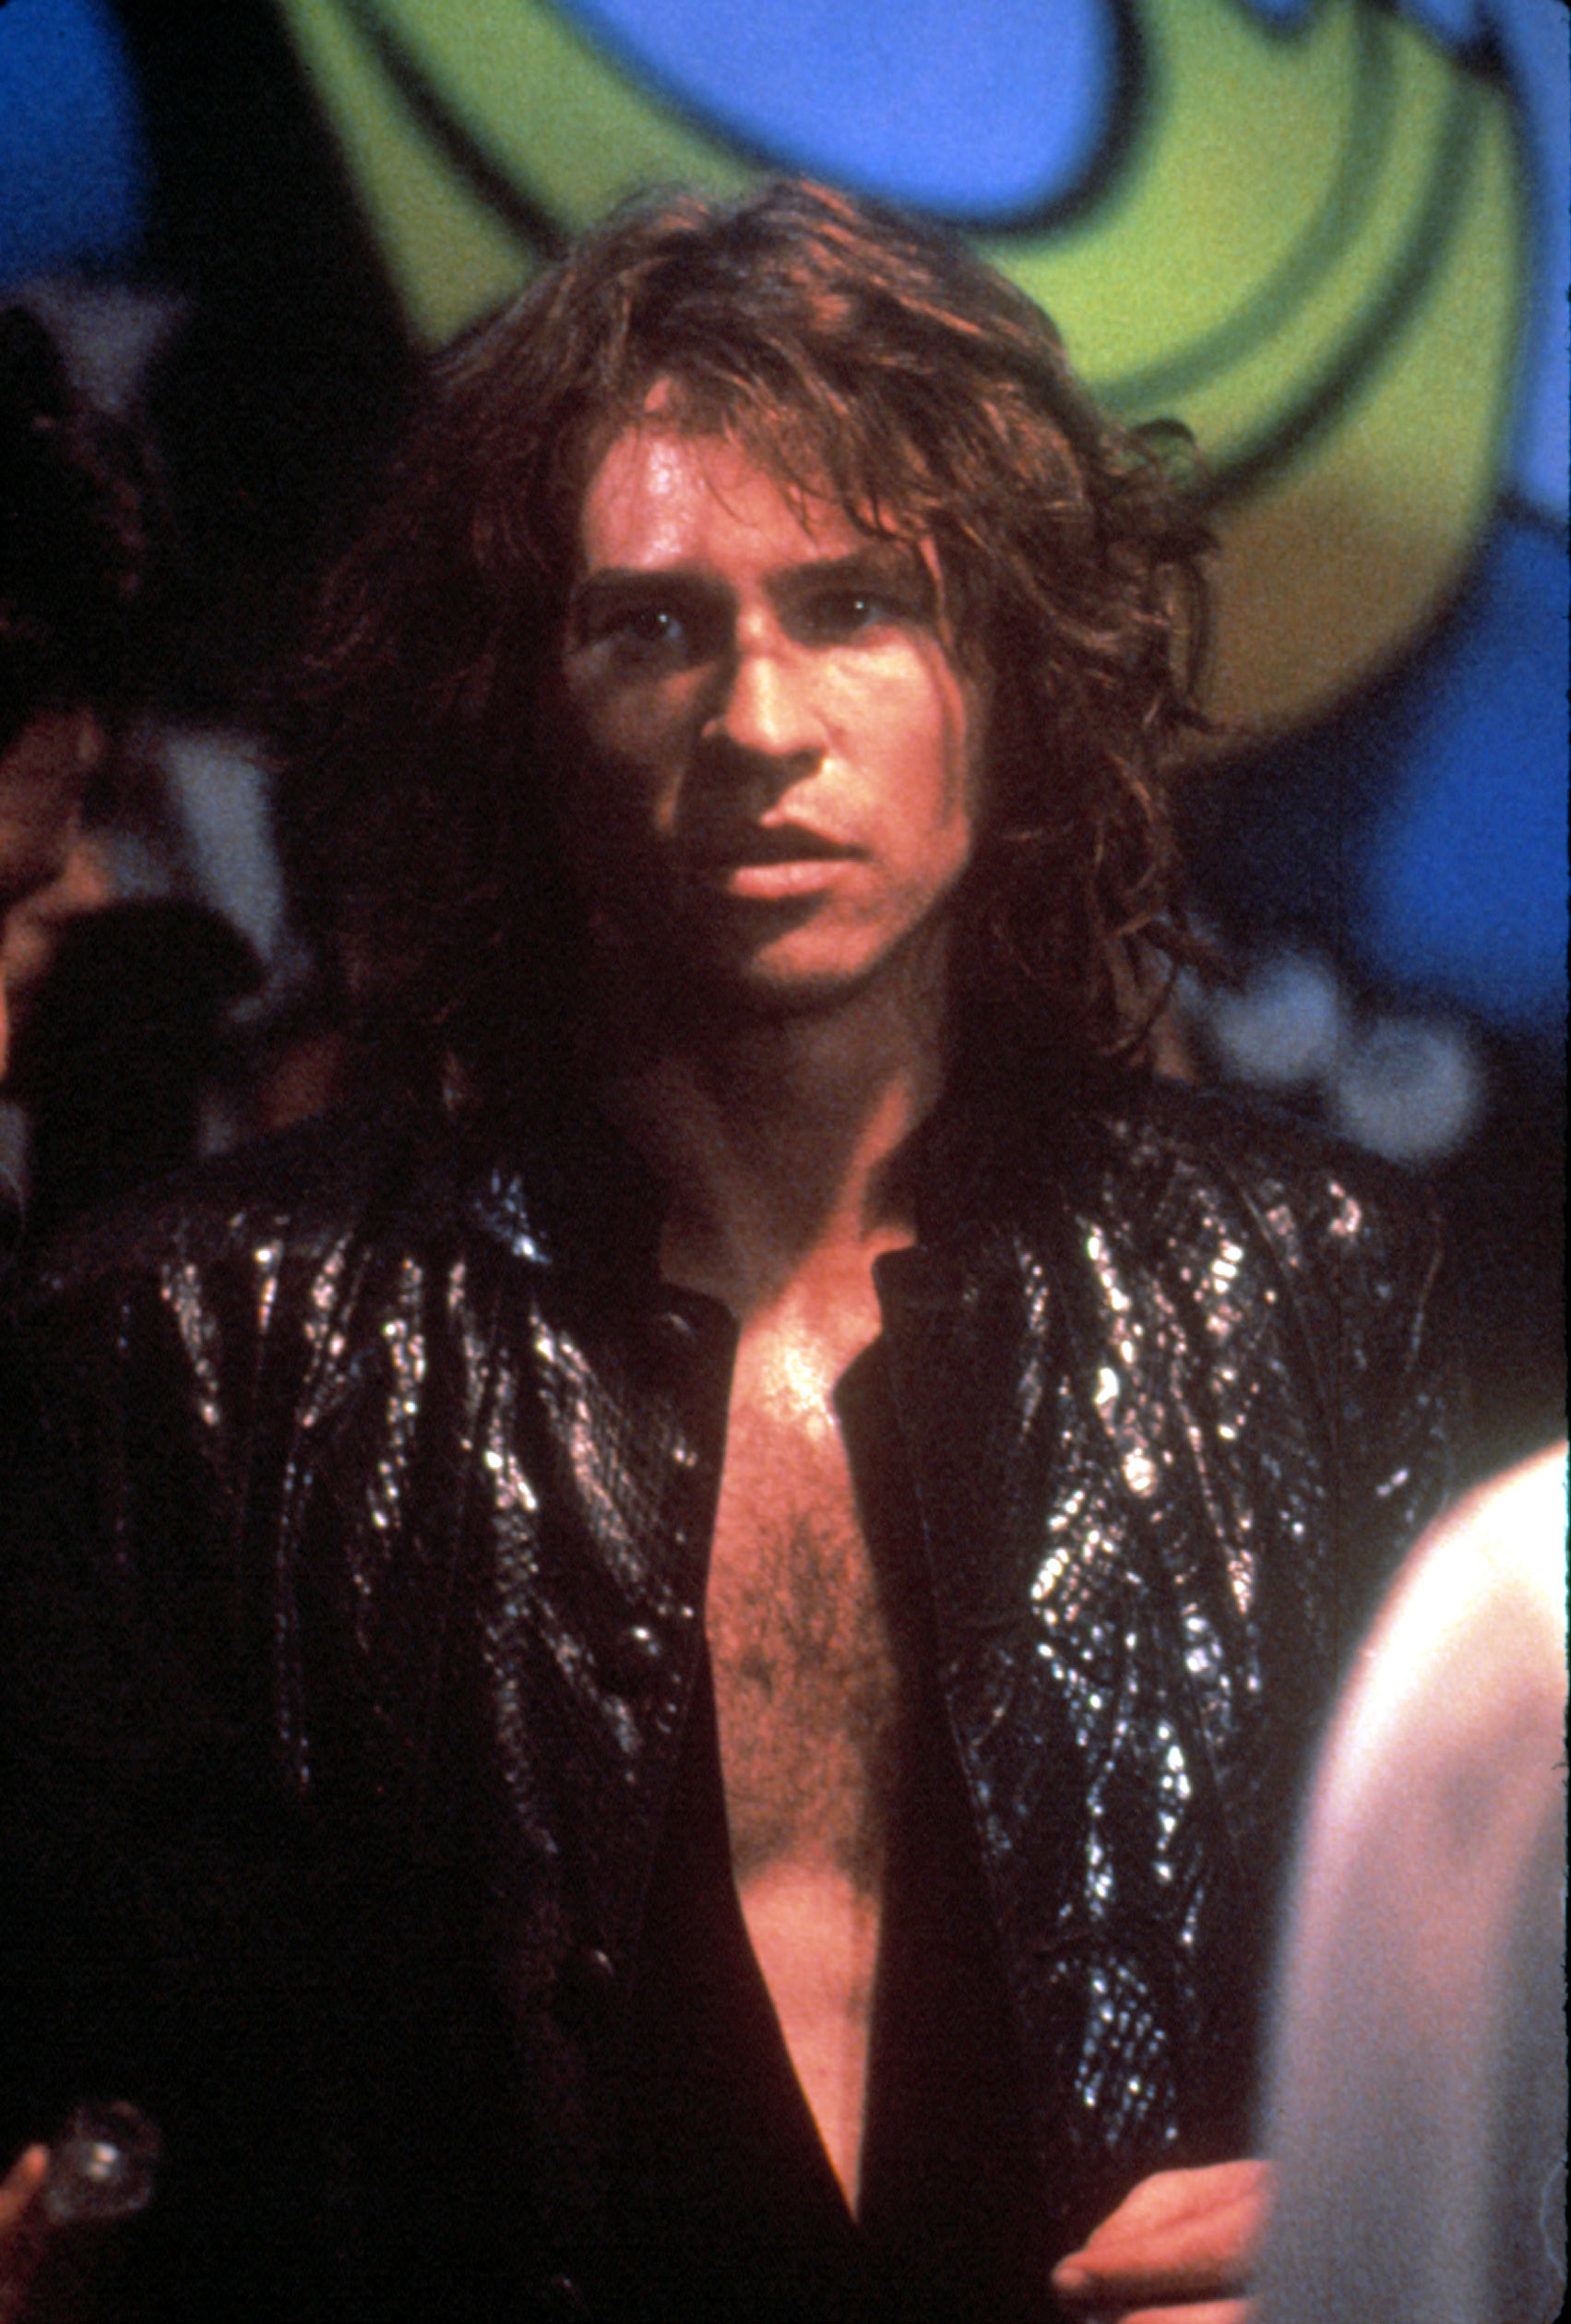 Val Kilmer dressed as Jim Morrison